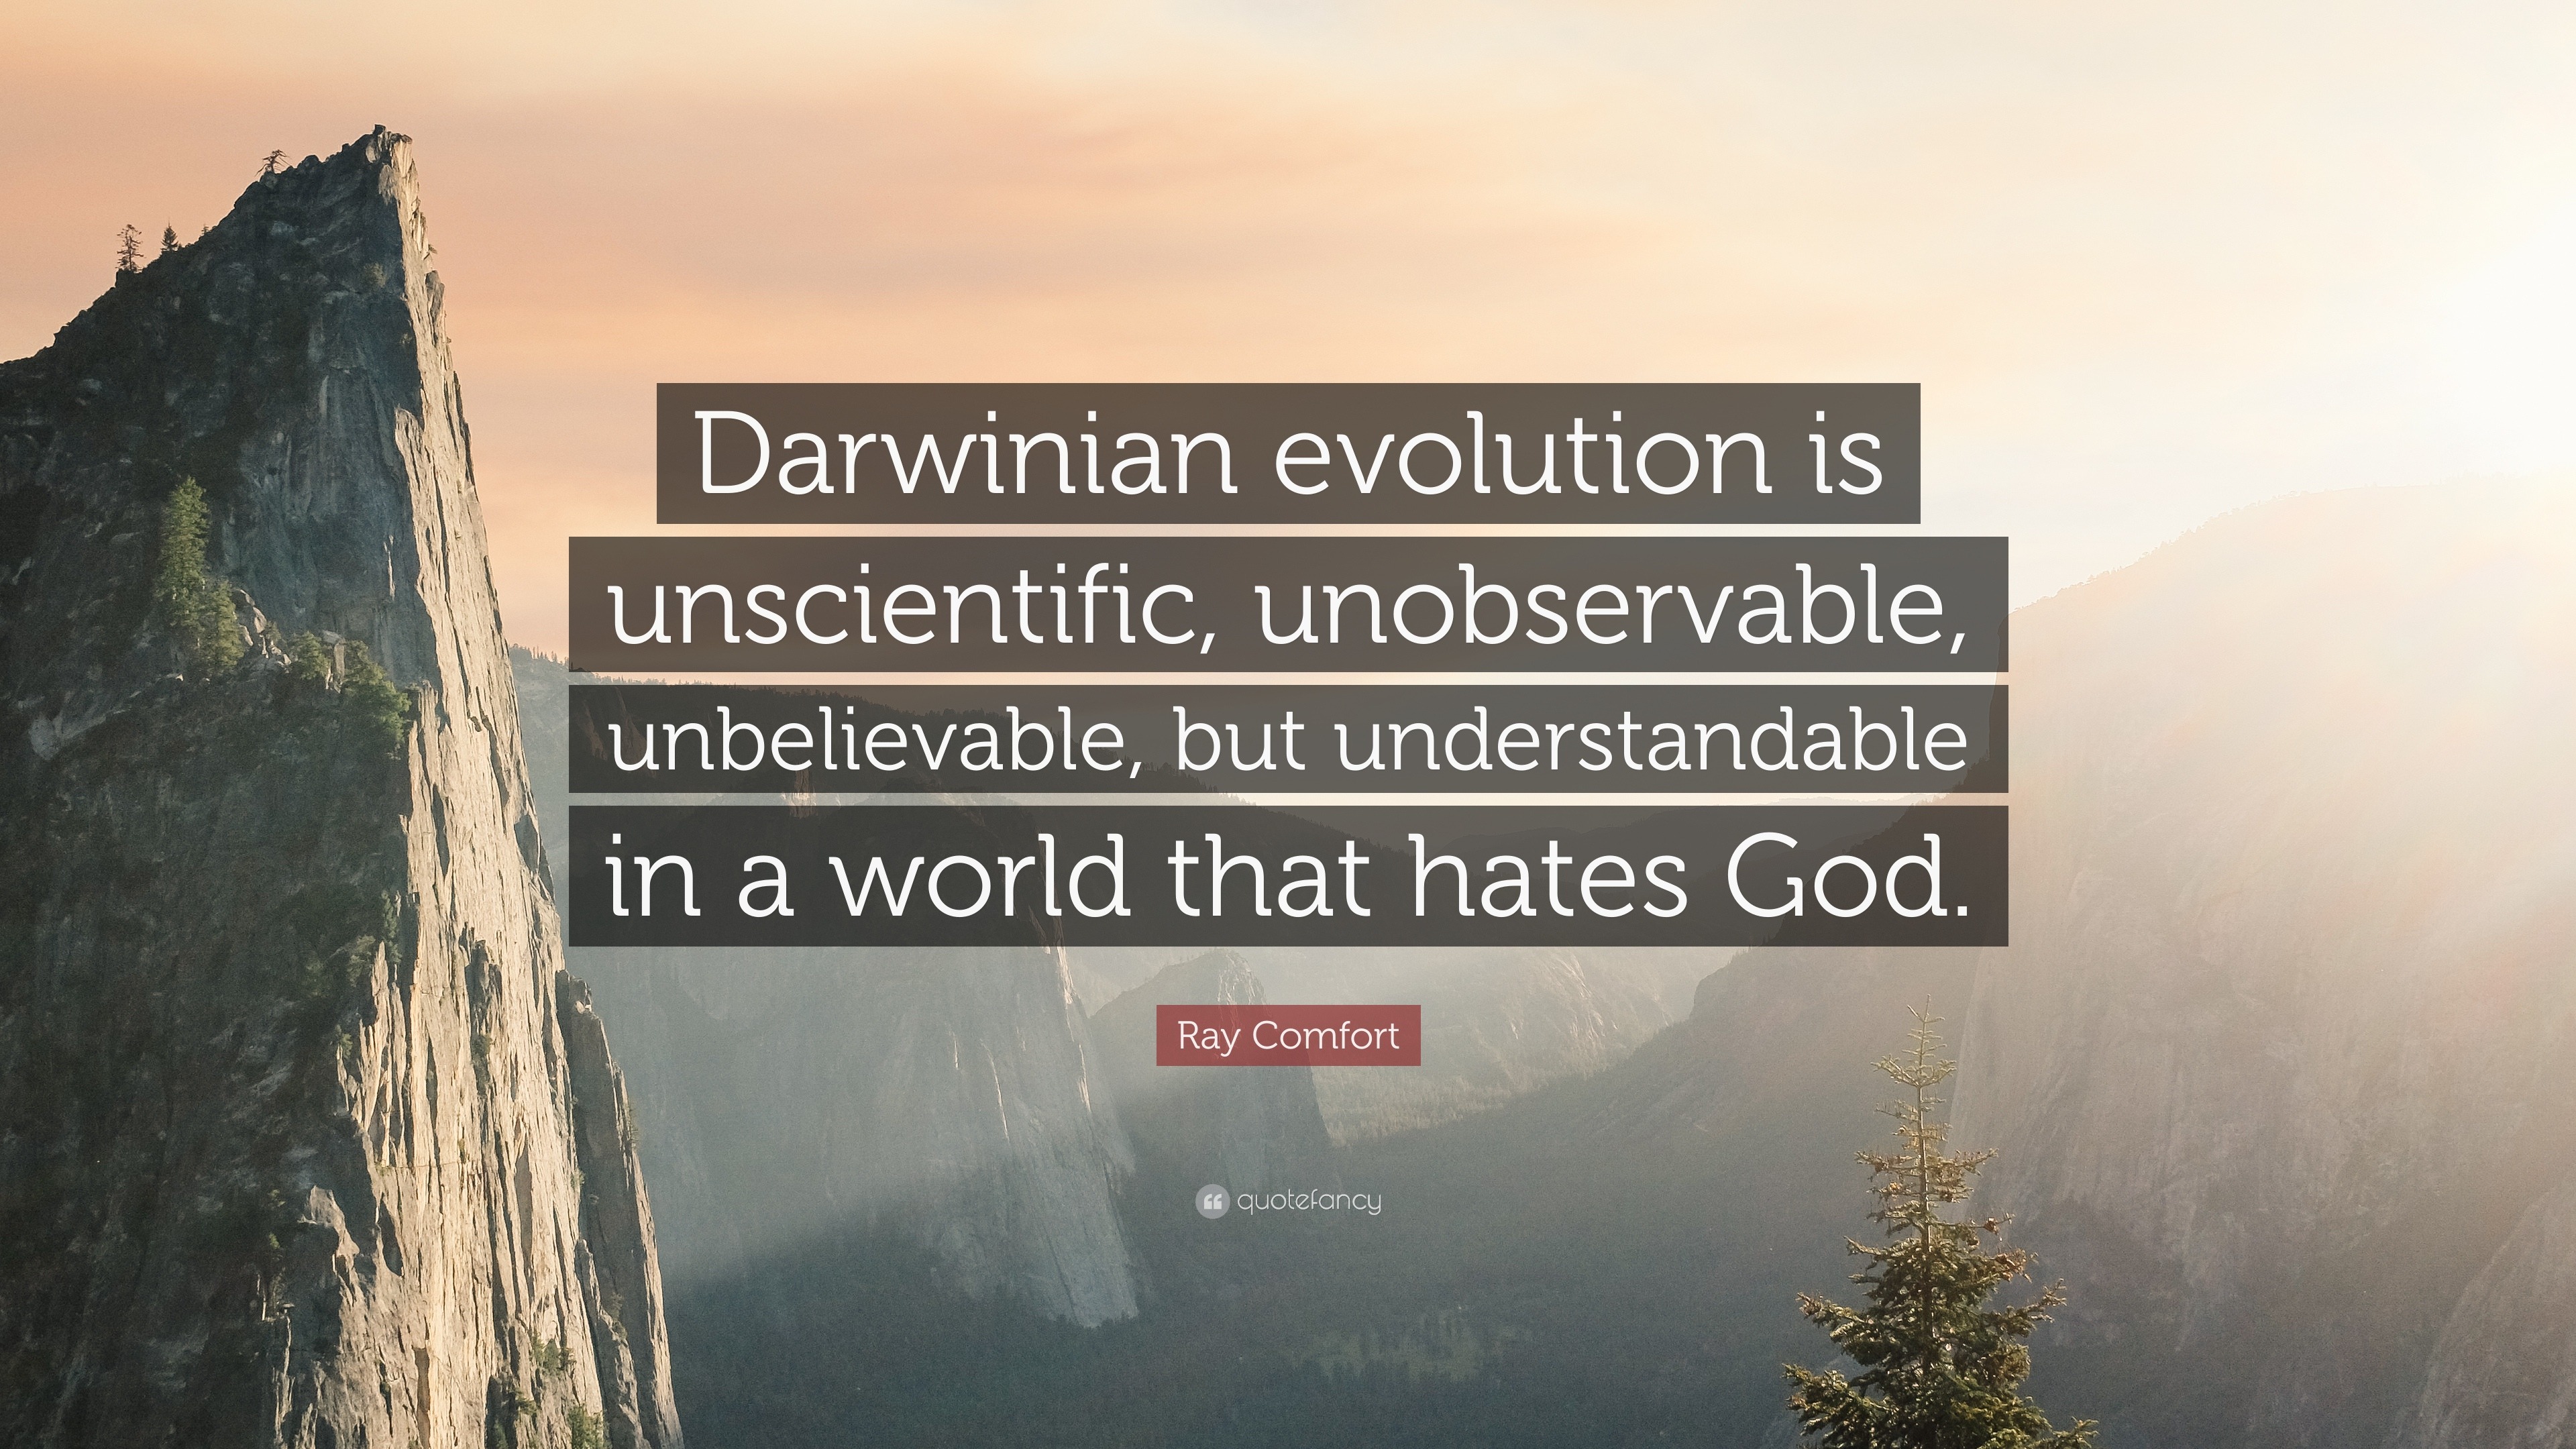 https://quotefancy.com/media/wallpaper/3840x2160/883429-Ray-Comfort-Quote-Darwinian-evolution-is-unscientific-unobservable.jpg